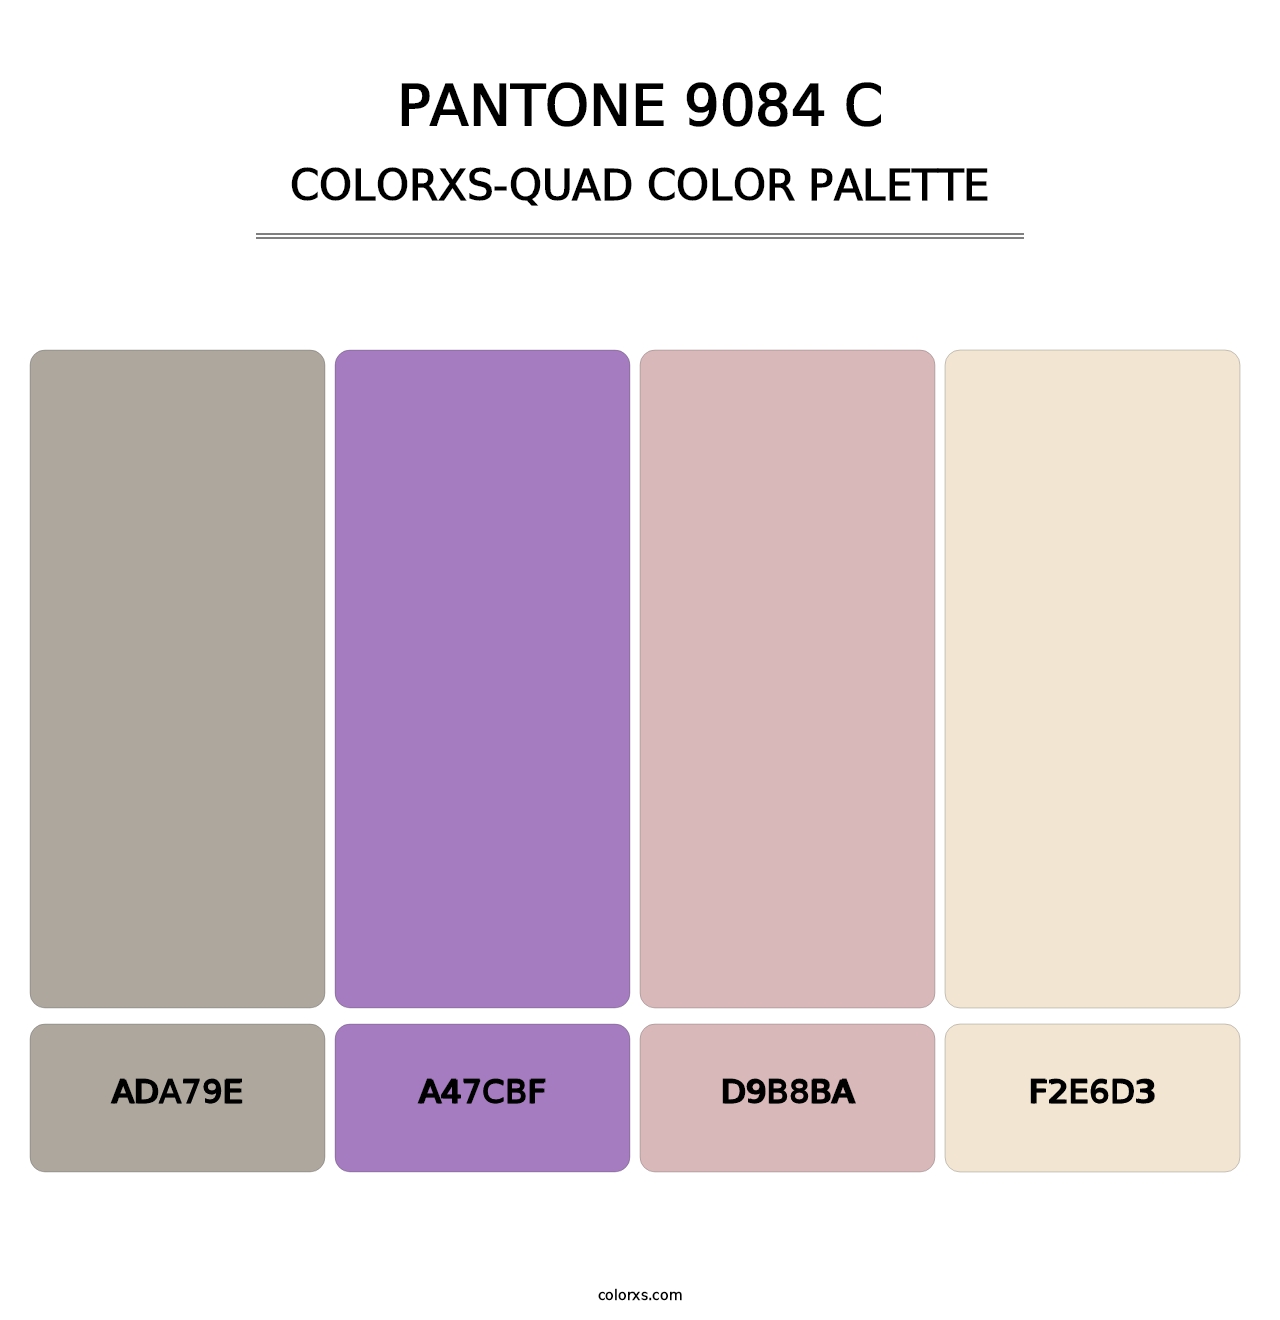 PANTONE 9084 C - Colorxs Quad Palette